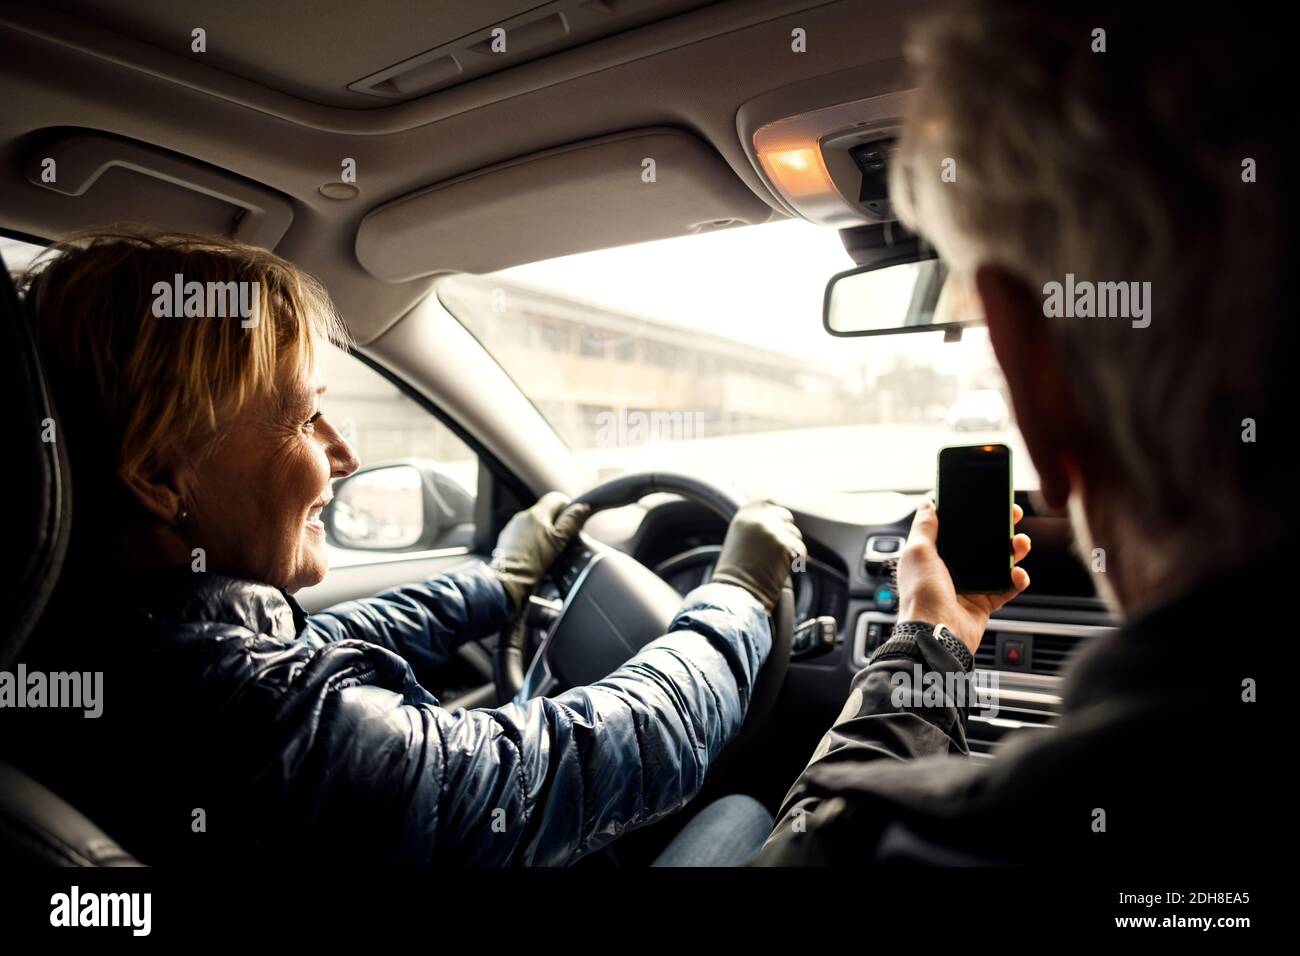 Donna anziana sorridente che guida l'auto mentre si siede da un uomo che prende selfie tramite smartphone Foto Stock